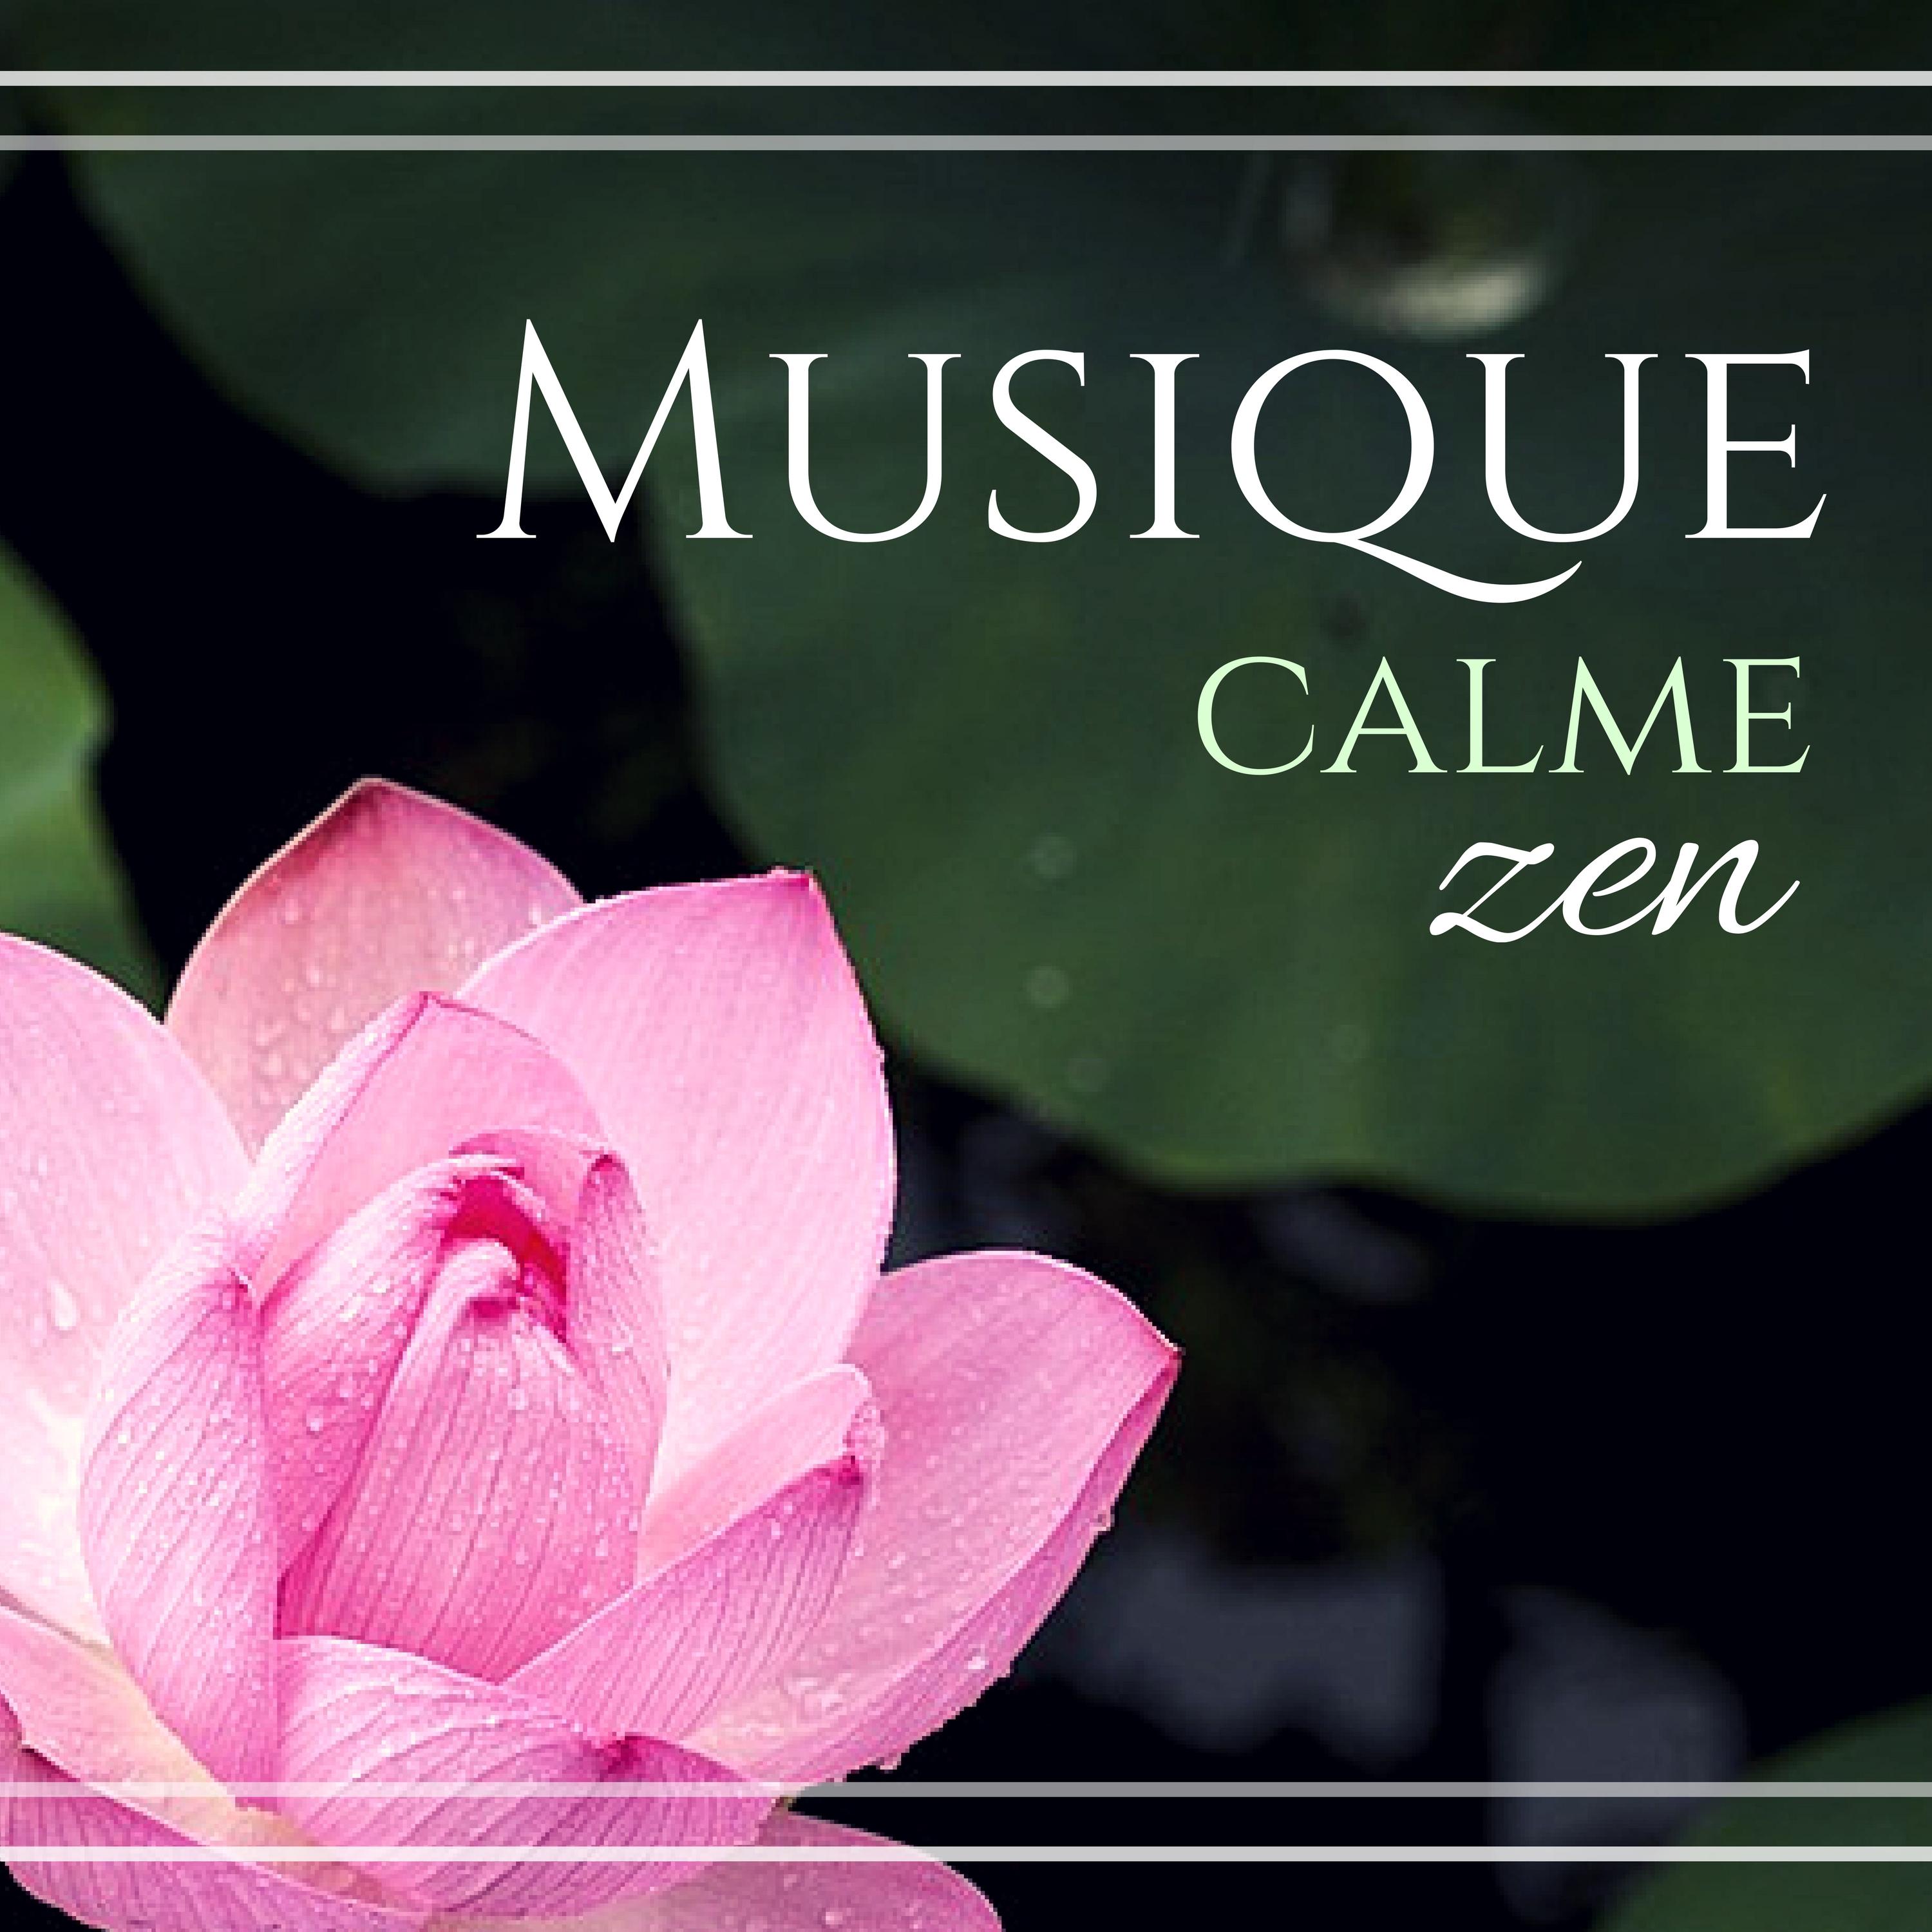 Musique calme zen